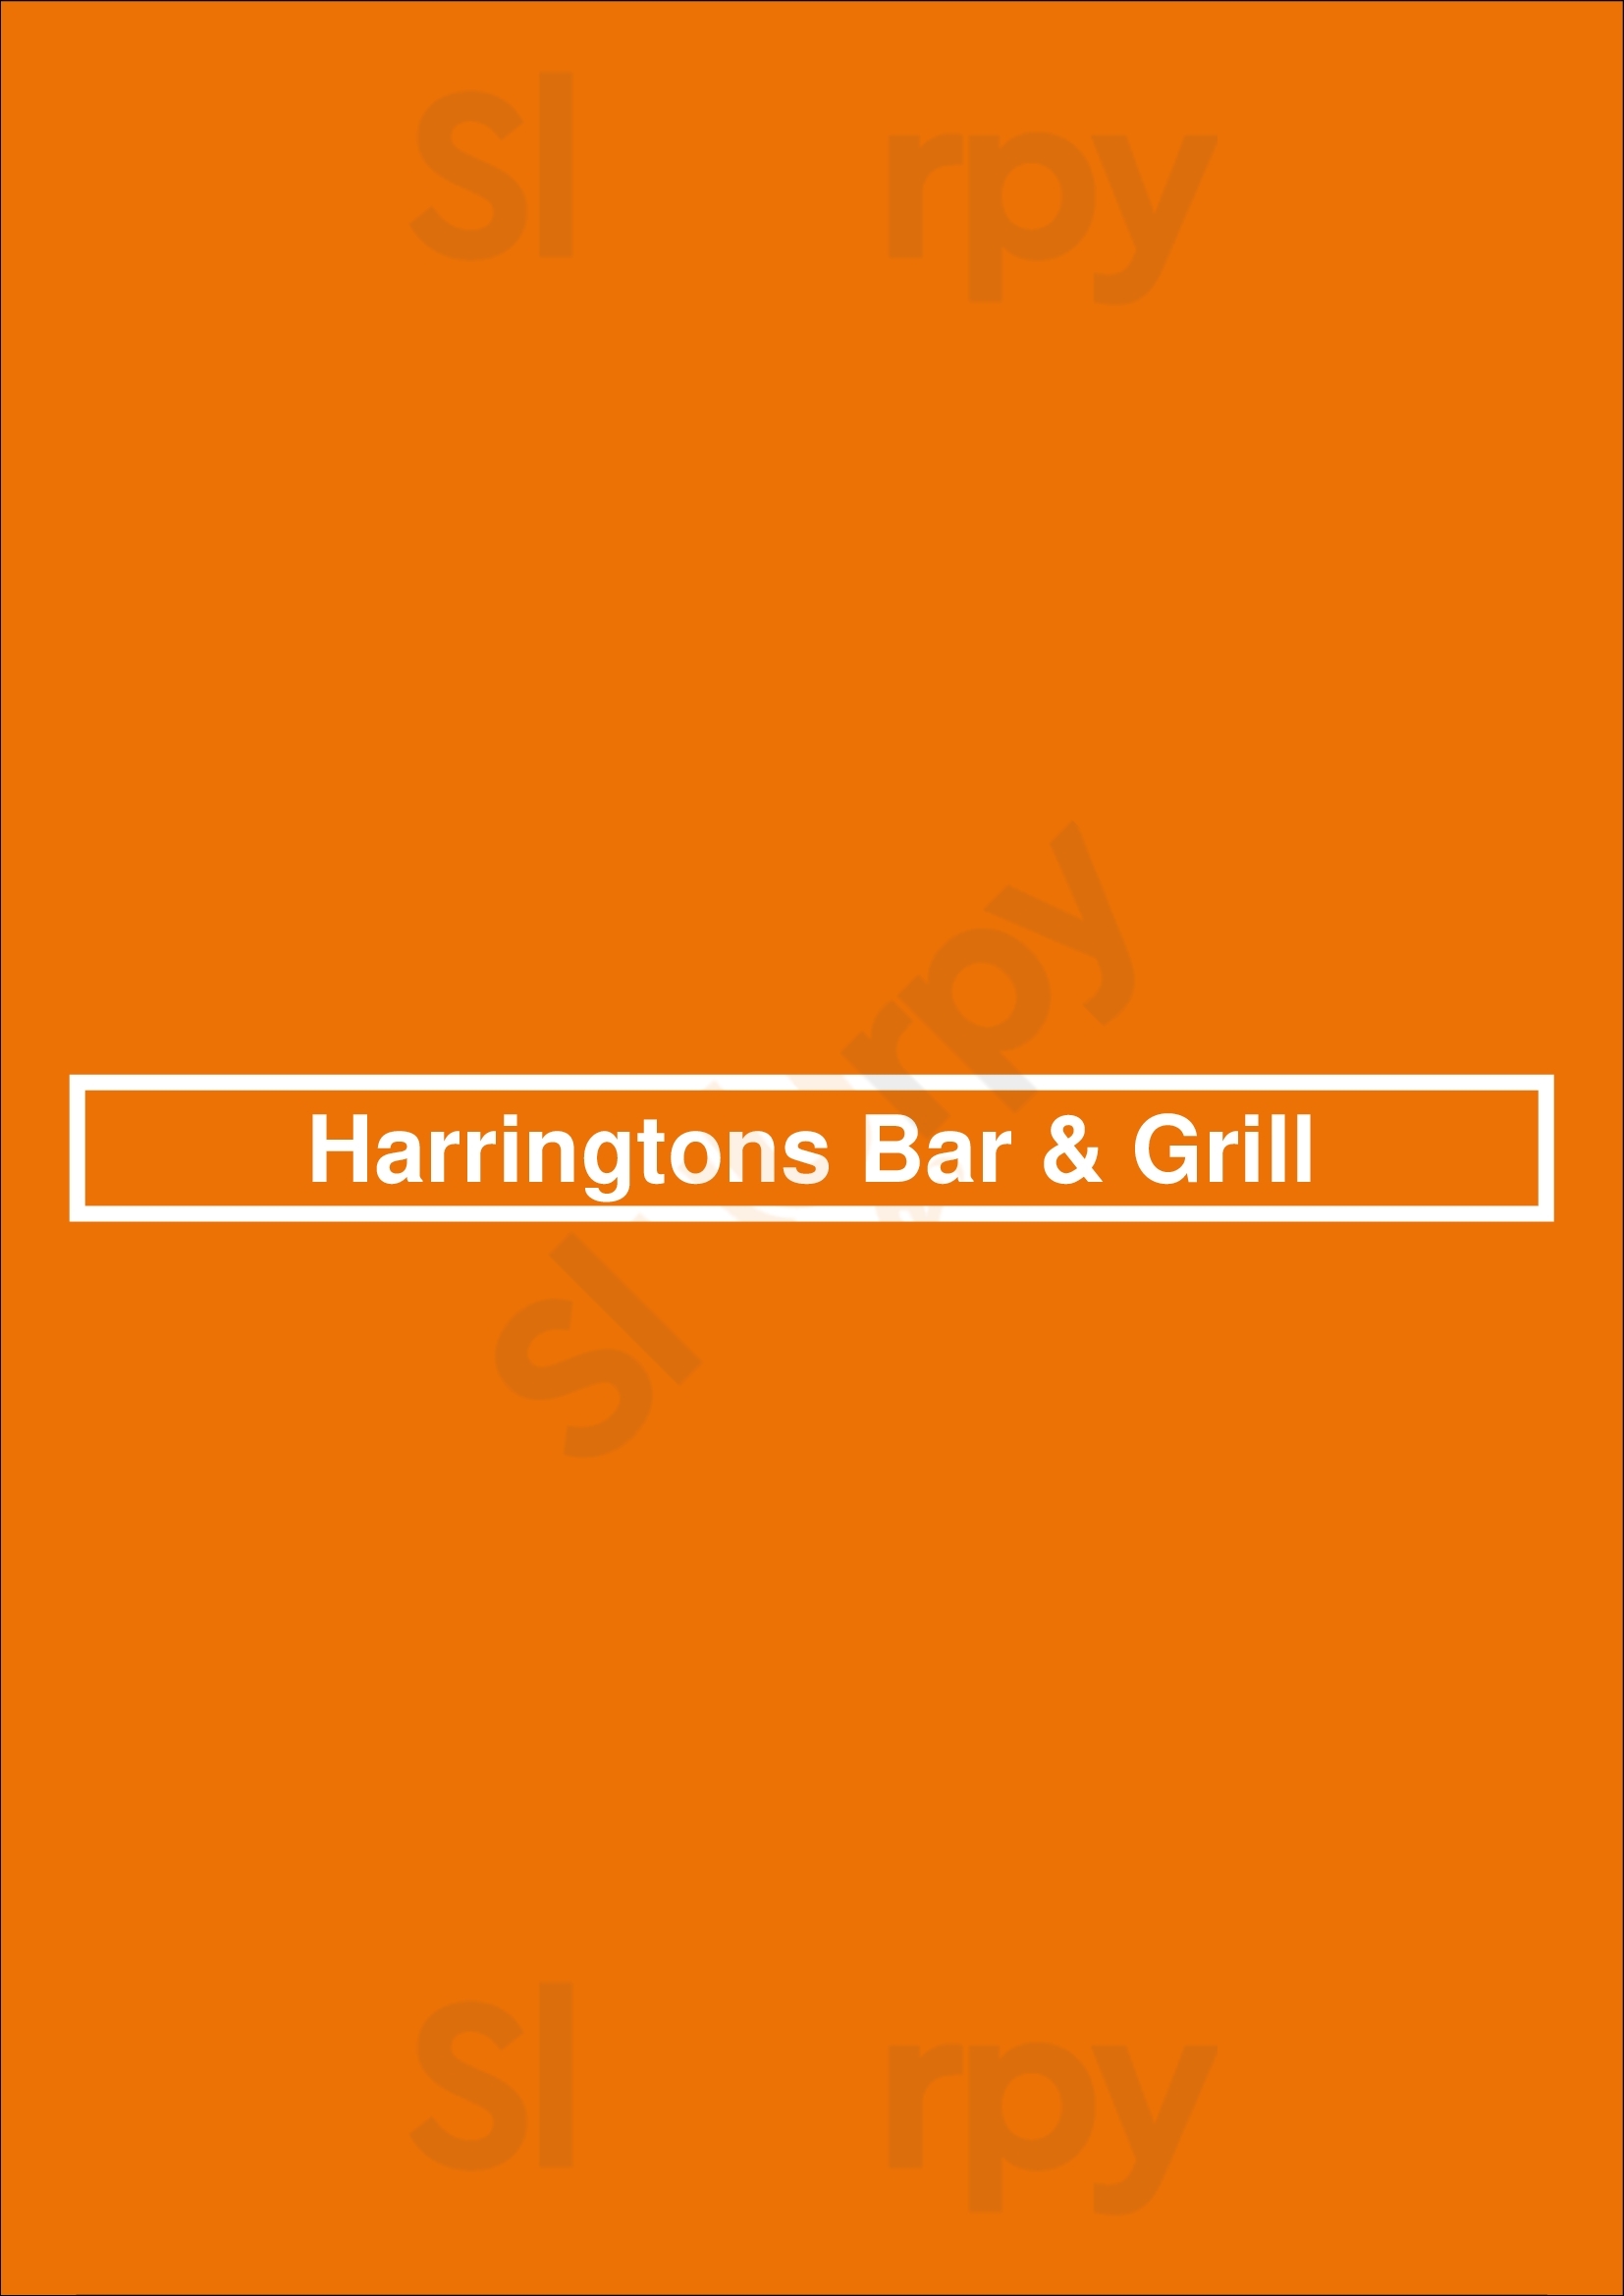 Harringtons Bar & Grill Narellan Menu - 1